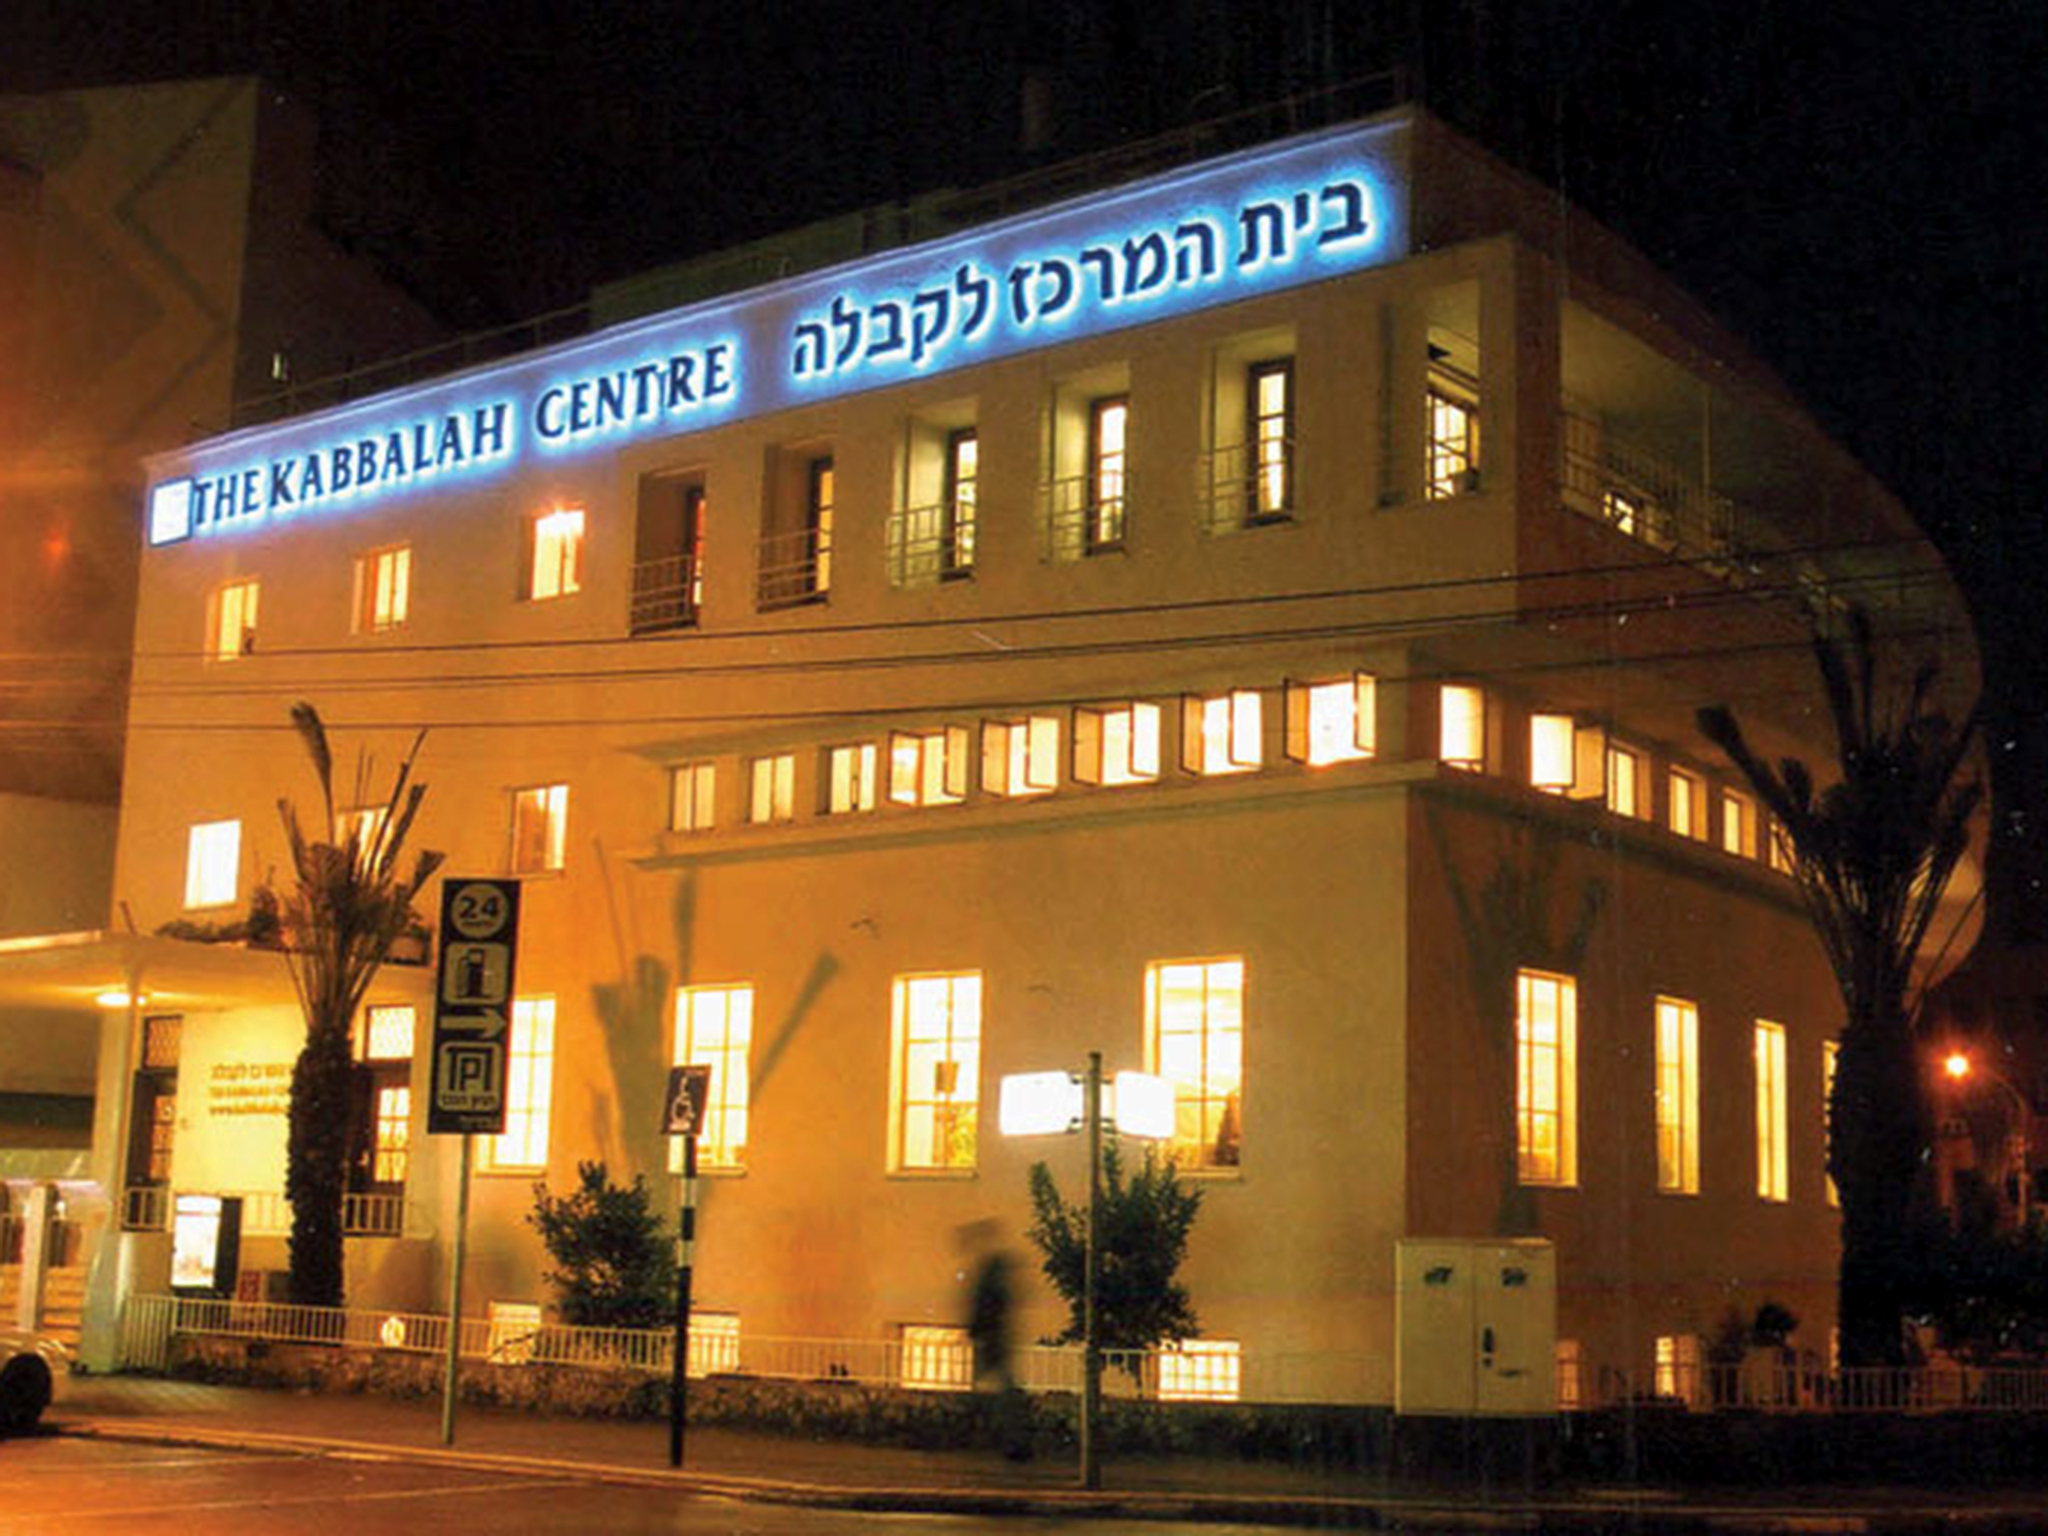 Kabbalah Center | Attractions in Tel Aviv City Center, Israel